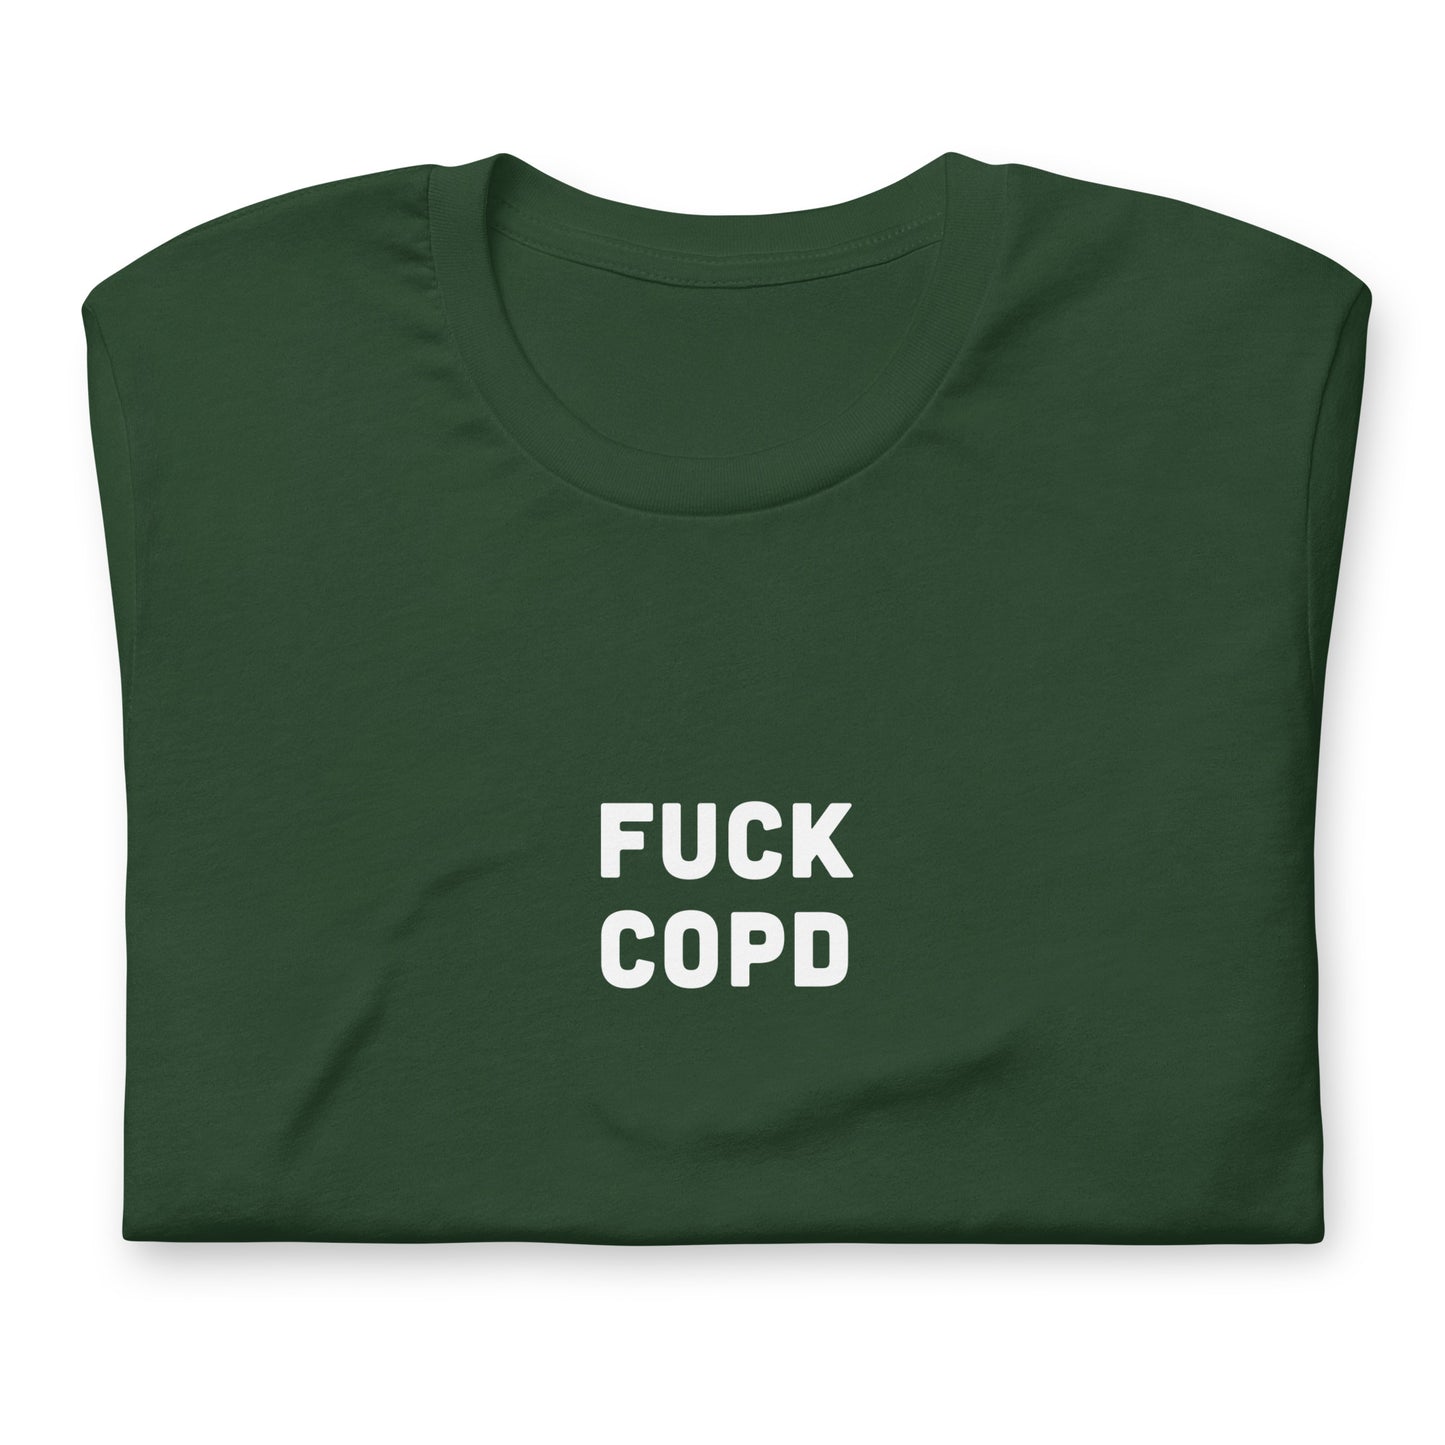 Fuck Copd T-Shirt Size L Color Black